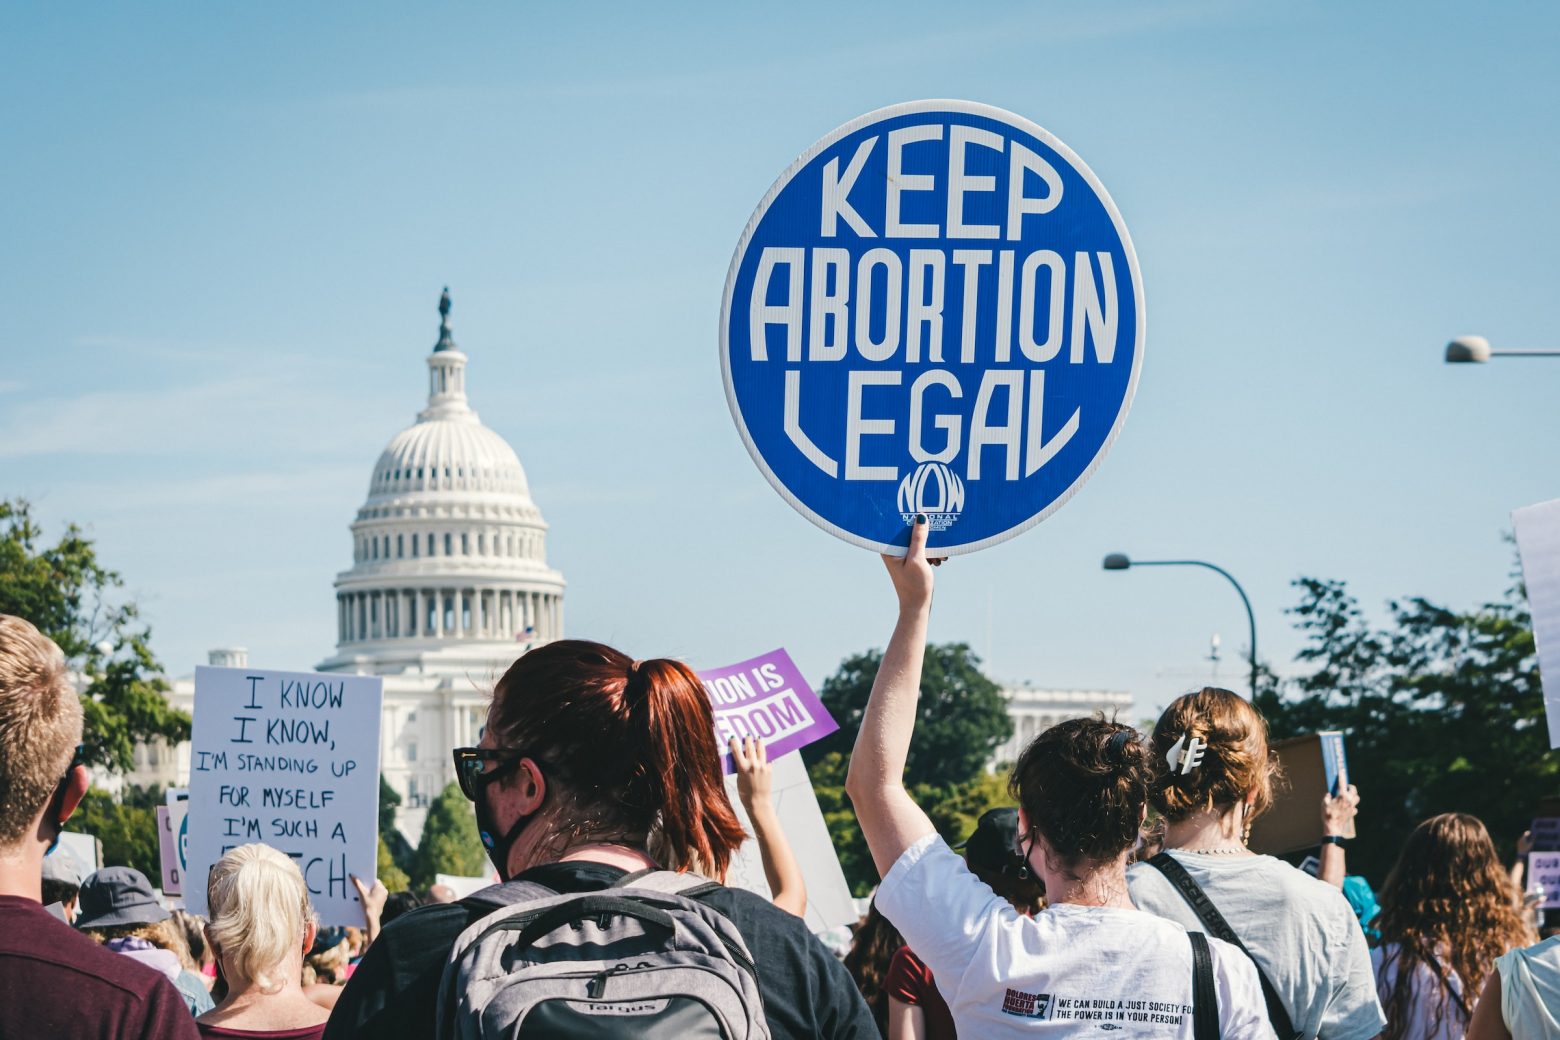 ΗΠΑ: Στο Κογκρέσο, οι Ρεπουμπλικάνοι επιτίθενται στην άμβλωση